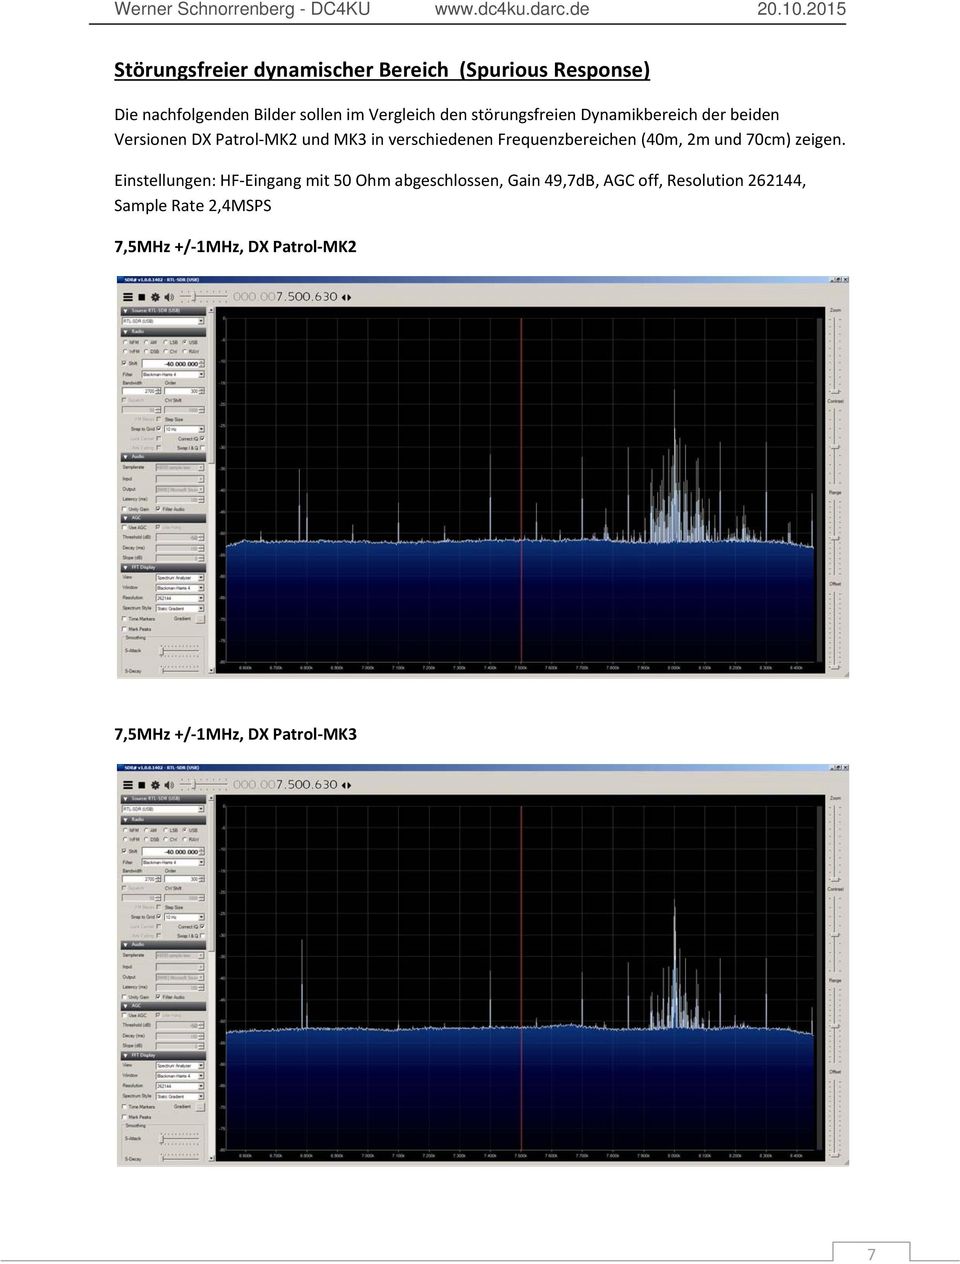 Frequenzbereichen (40m, 2m und 70cm) zeigen.